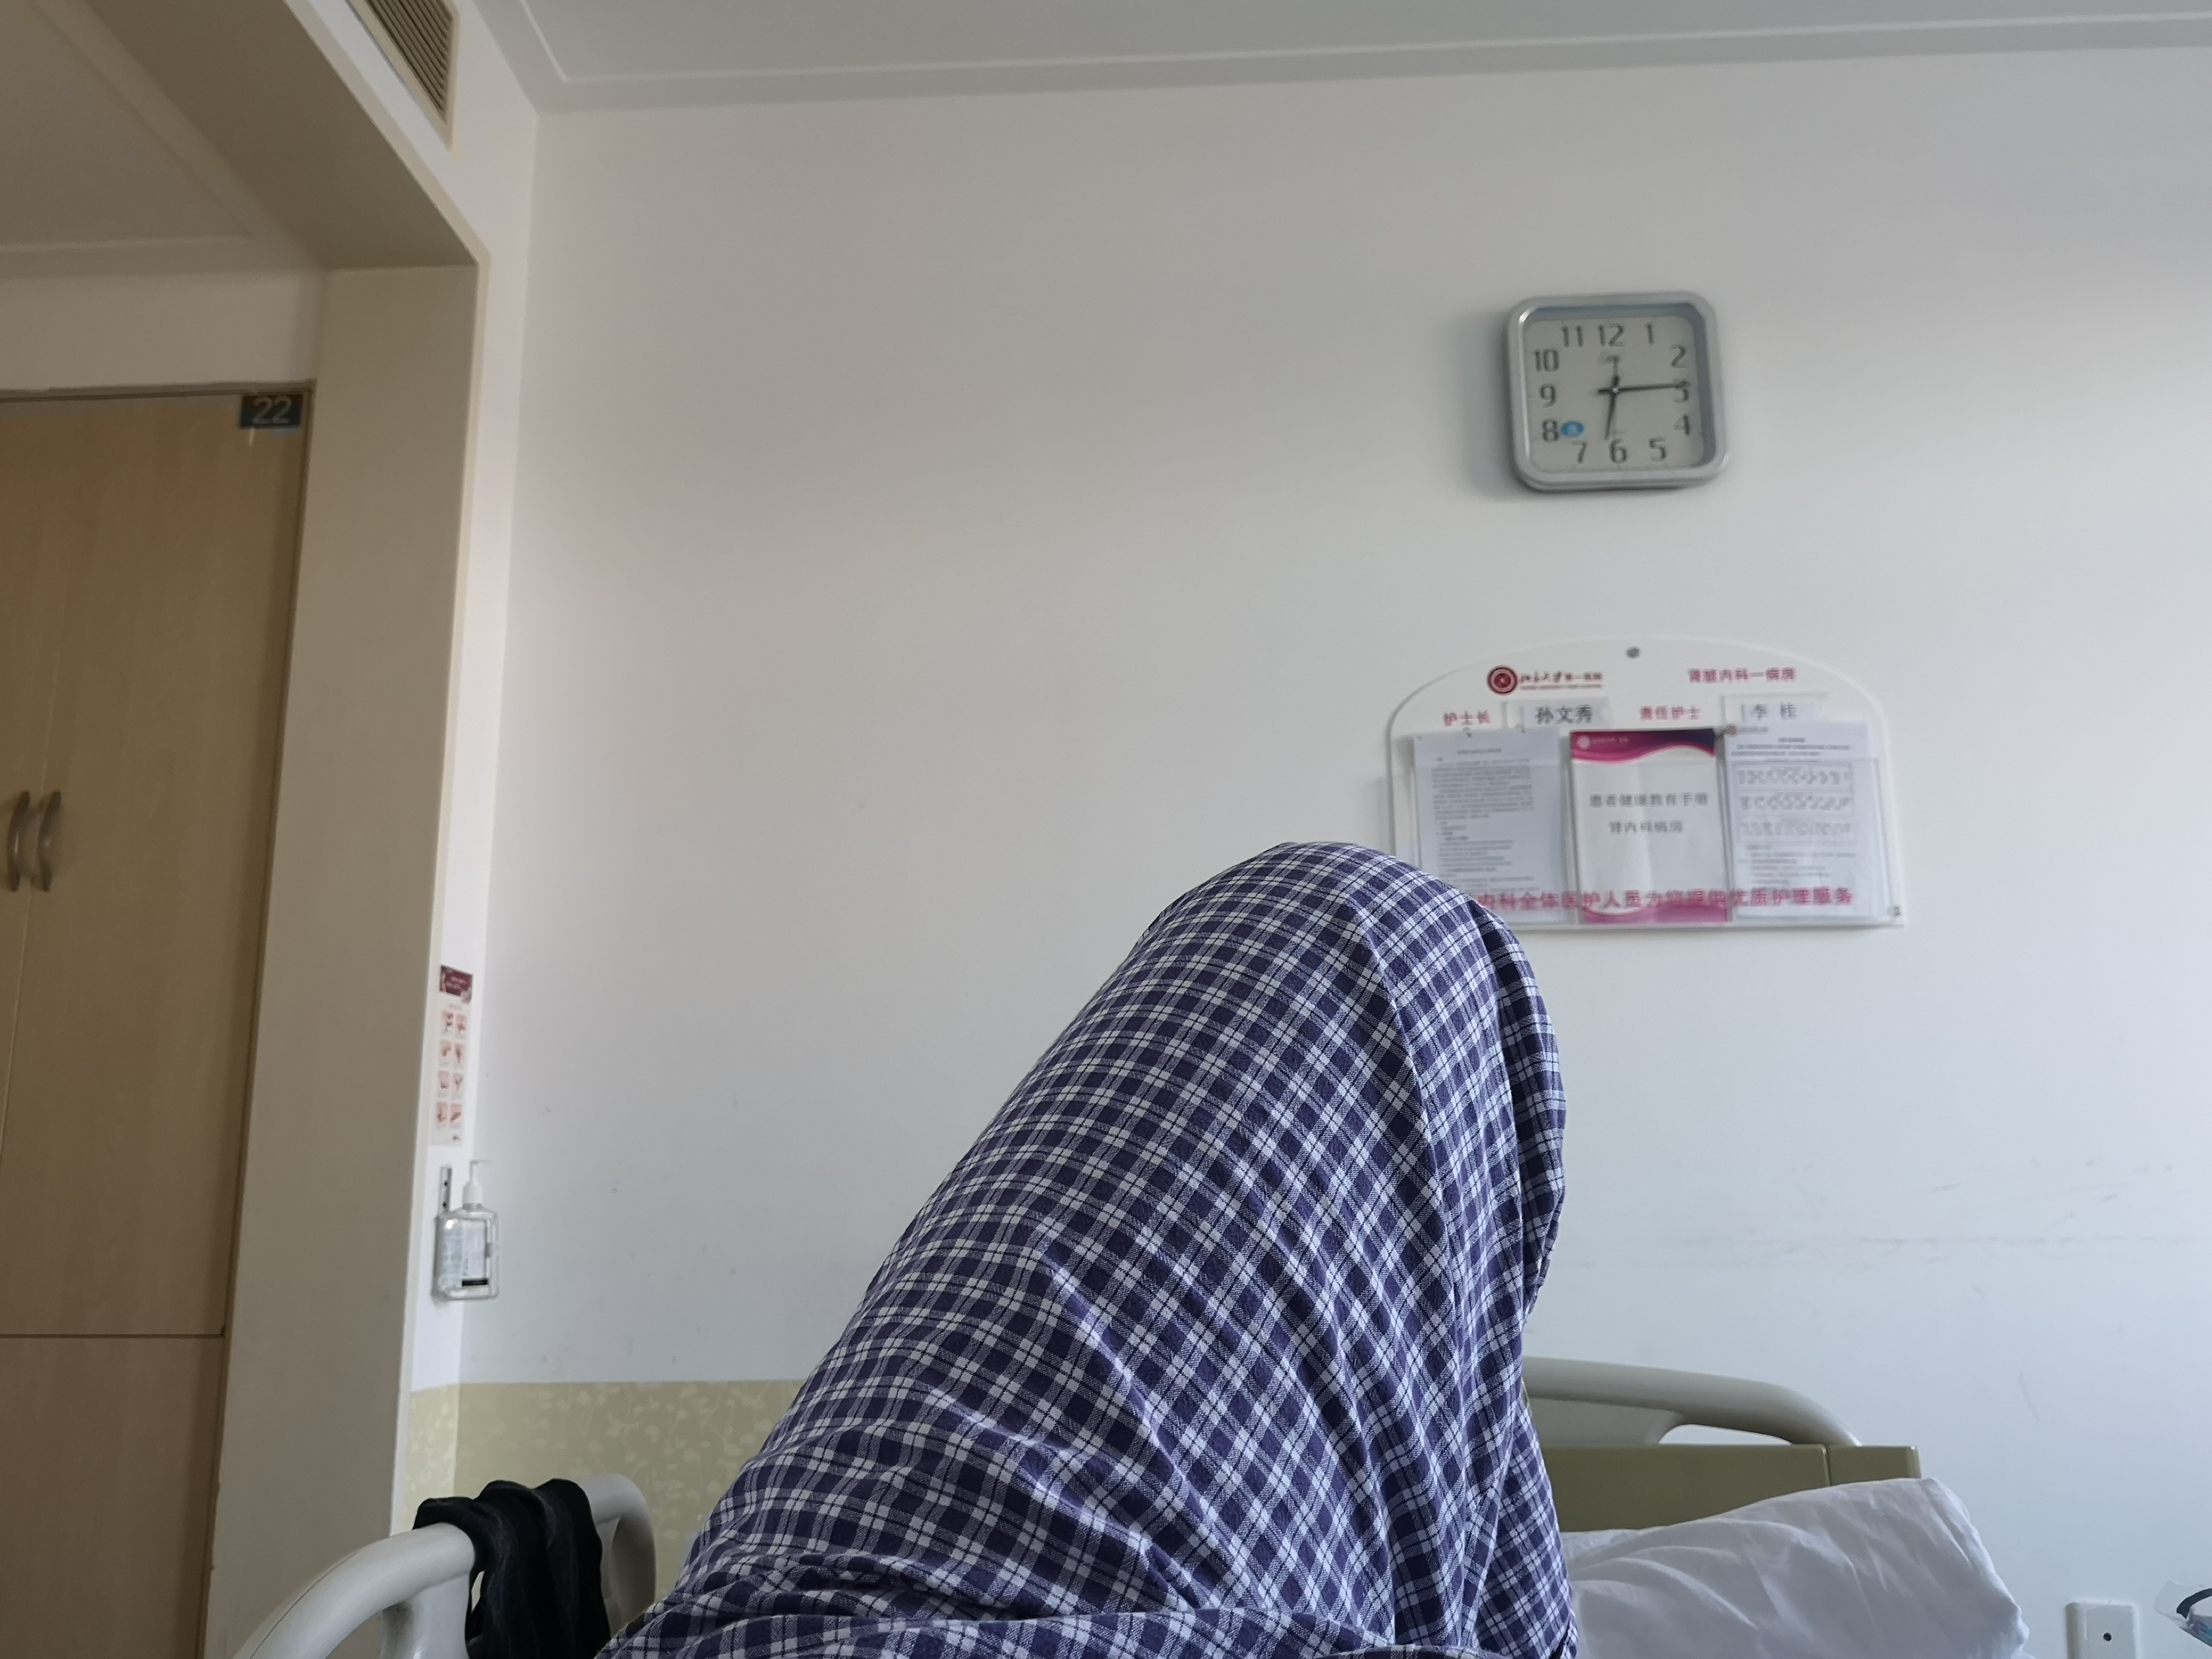 自己躺在医院的照片图片